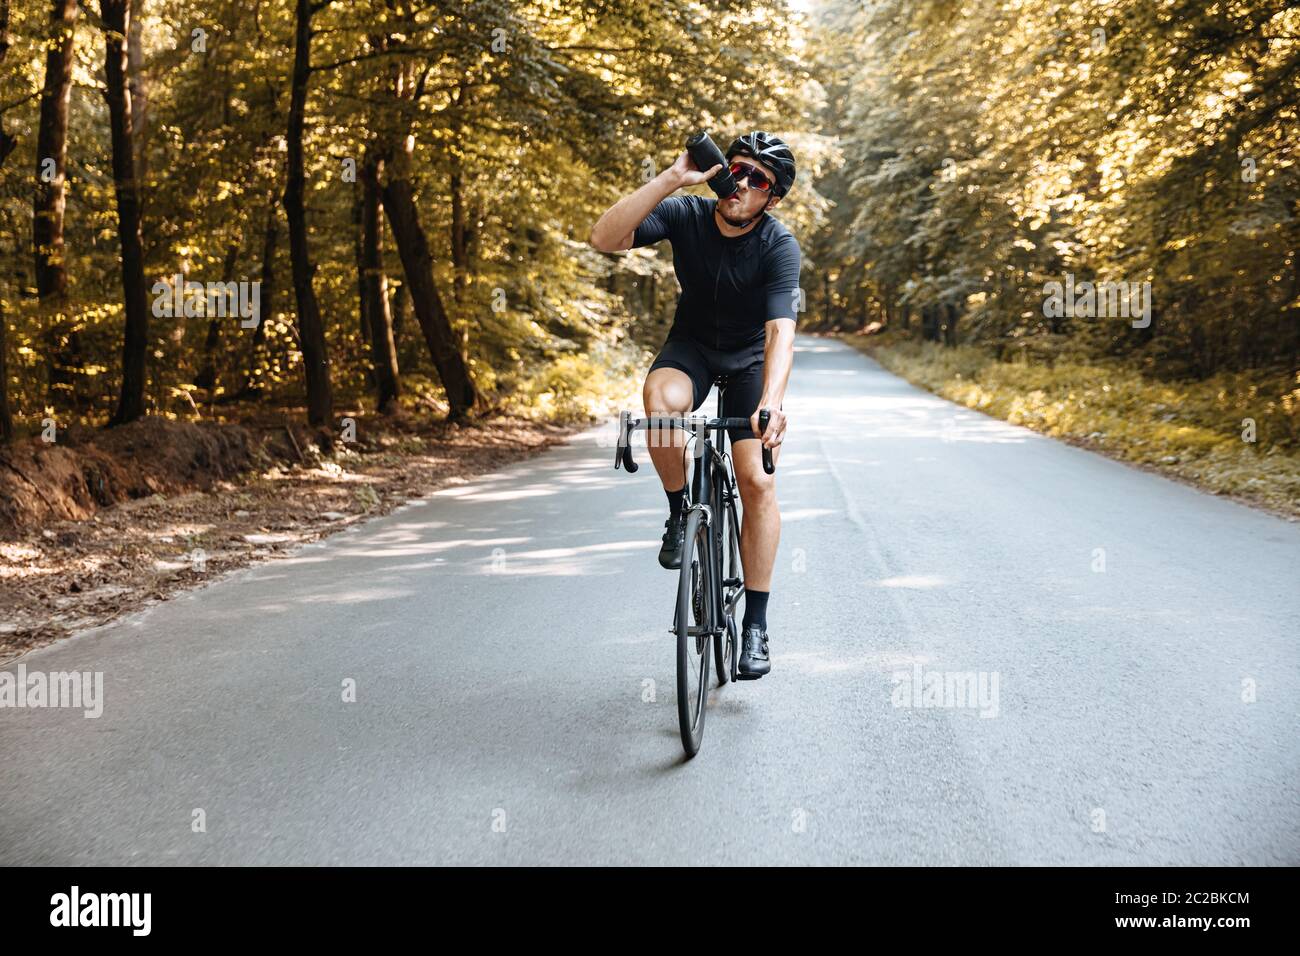 Profi-Sportler in aktiver Kleidung und Schutzhelm Trinkwasser beim Radfahren an der frischen Luft. Reifer Mann in Spiegelglas genießen fav Stockfoto